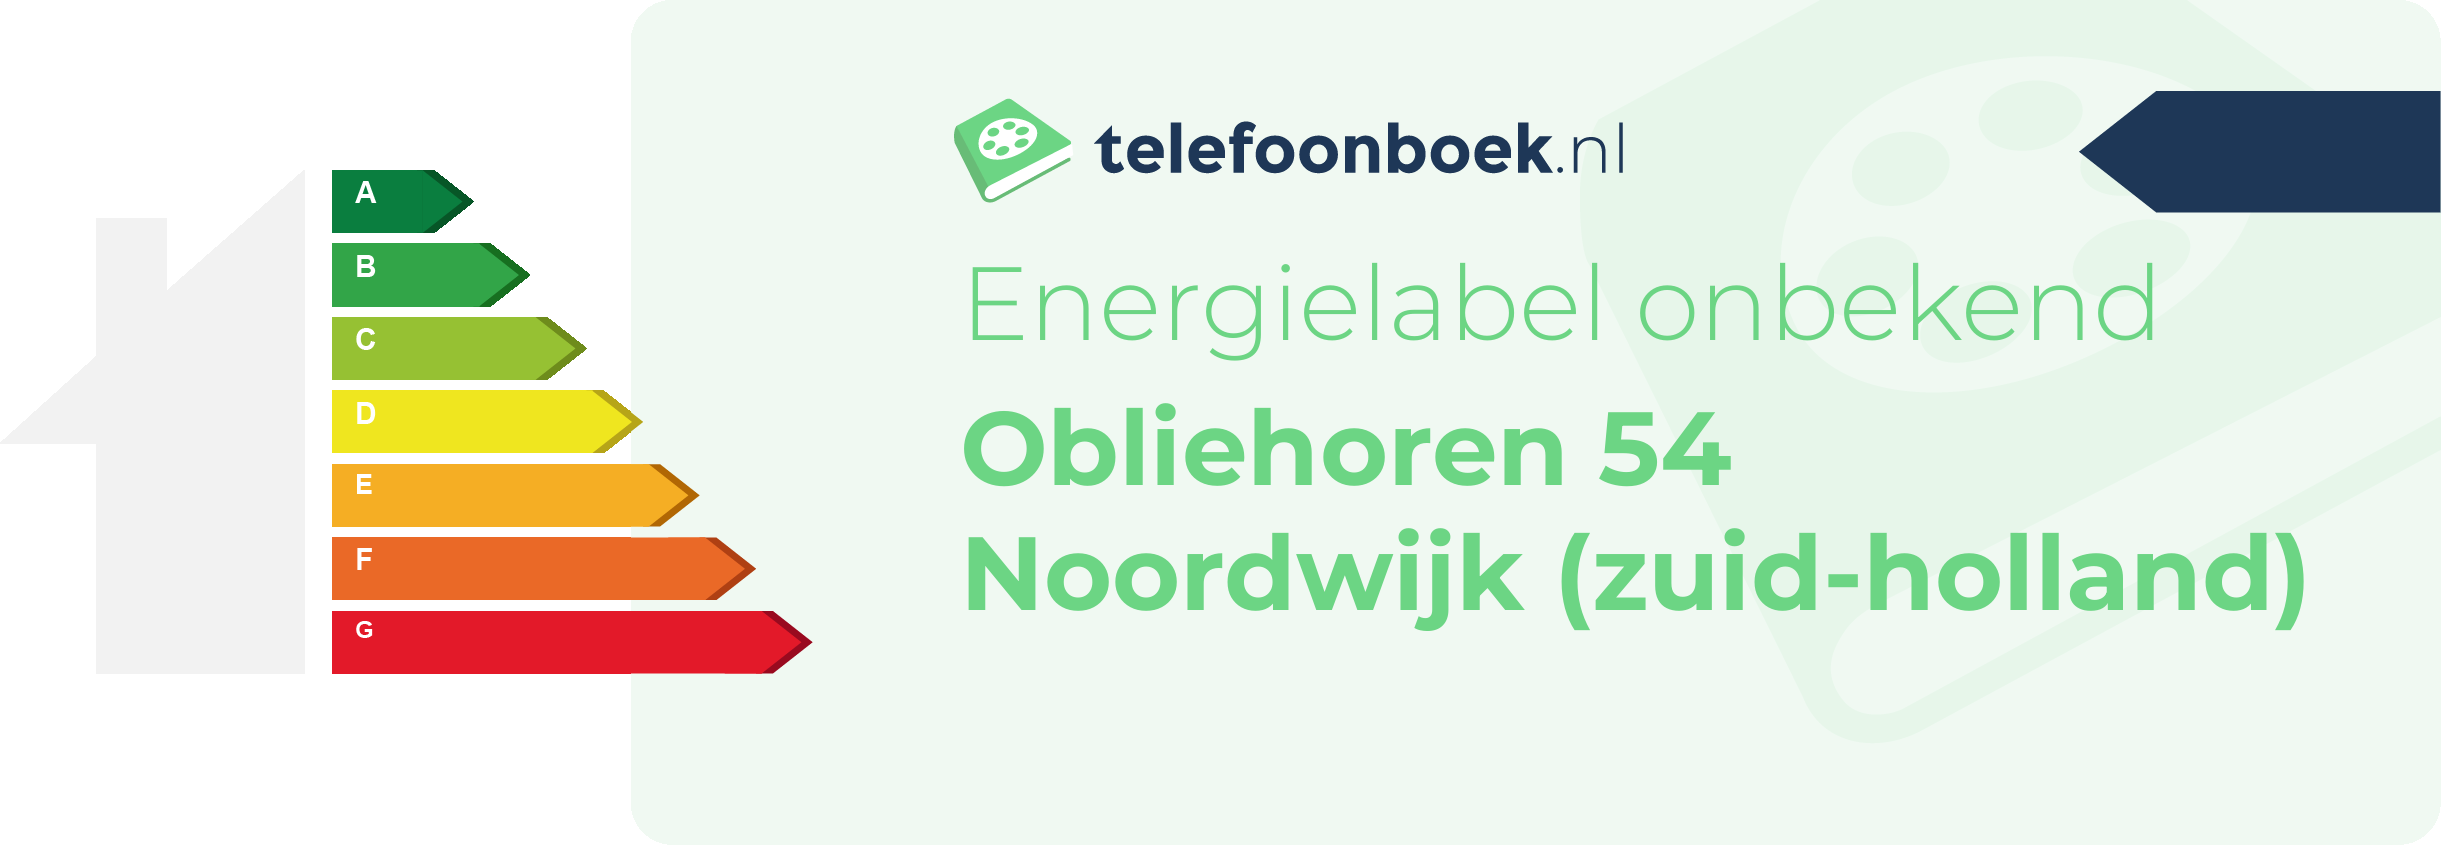 Energielabel Obliehoren 54 Noordwijk (Zuid-Holland)